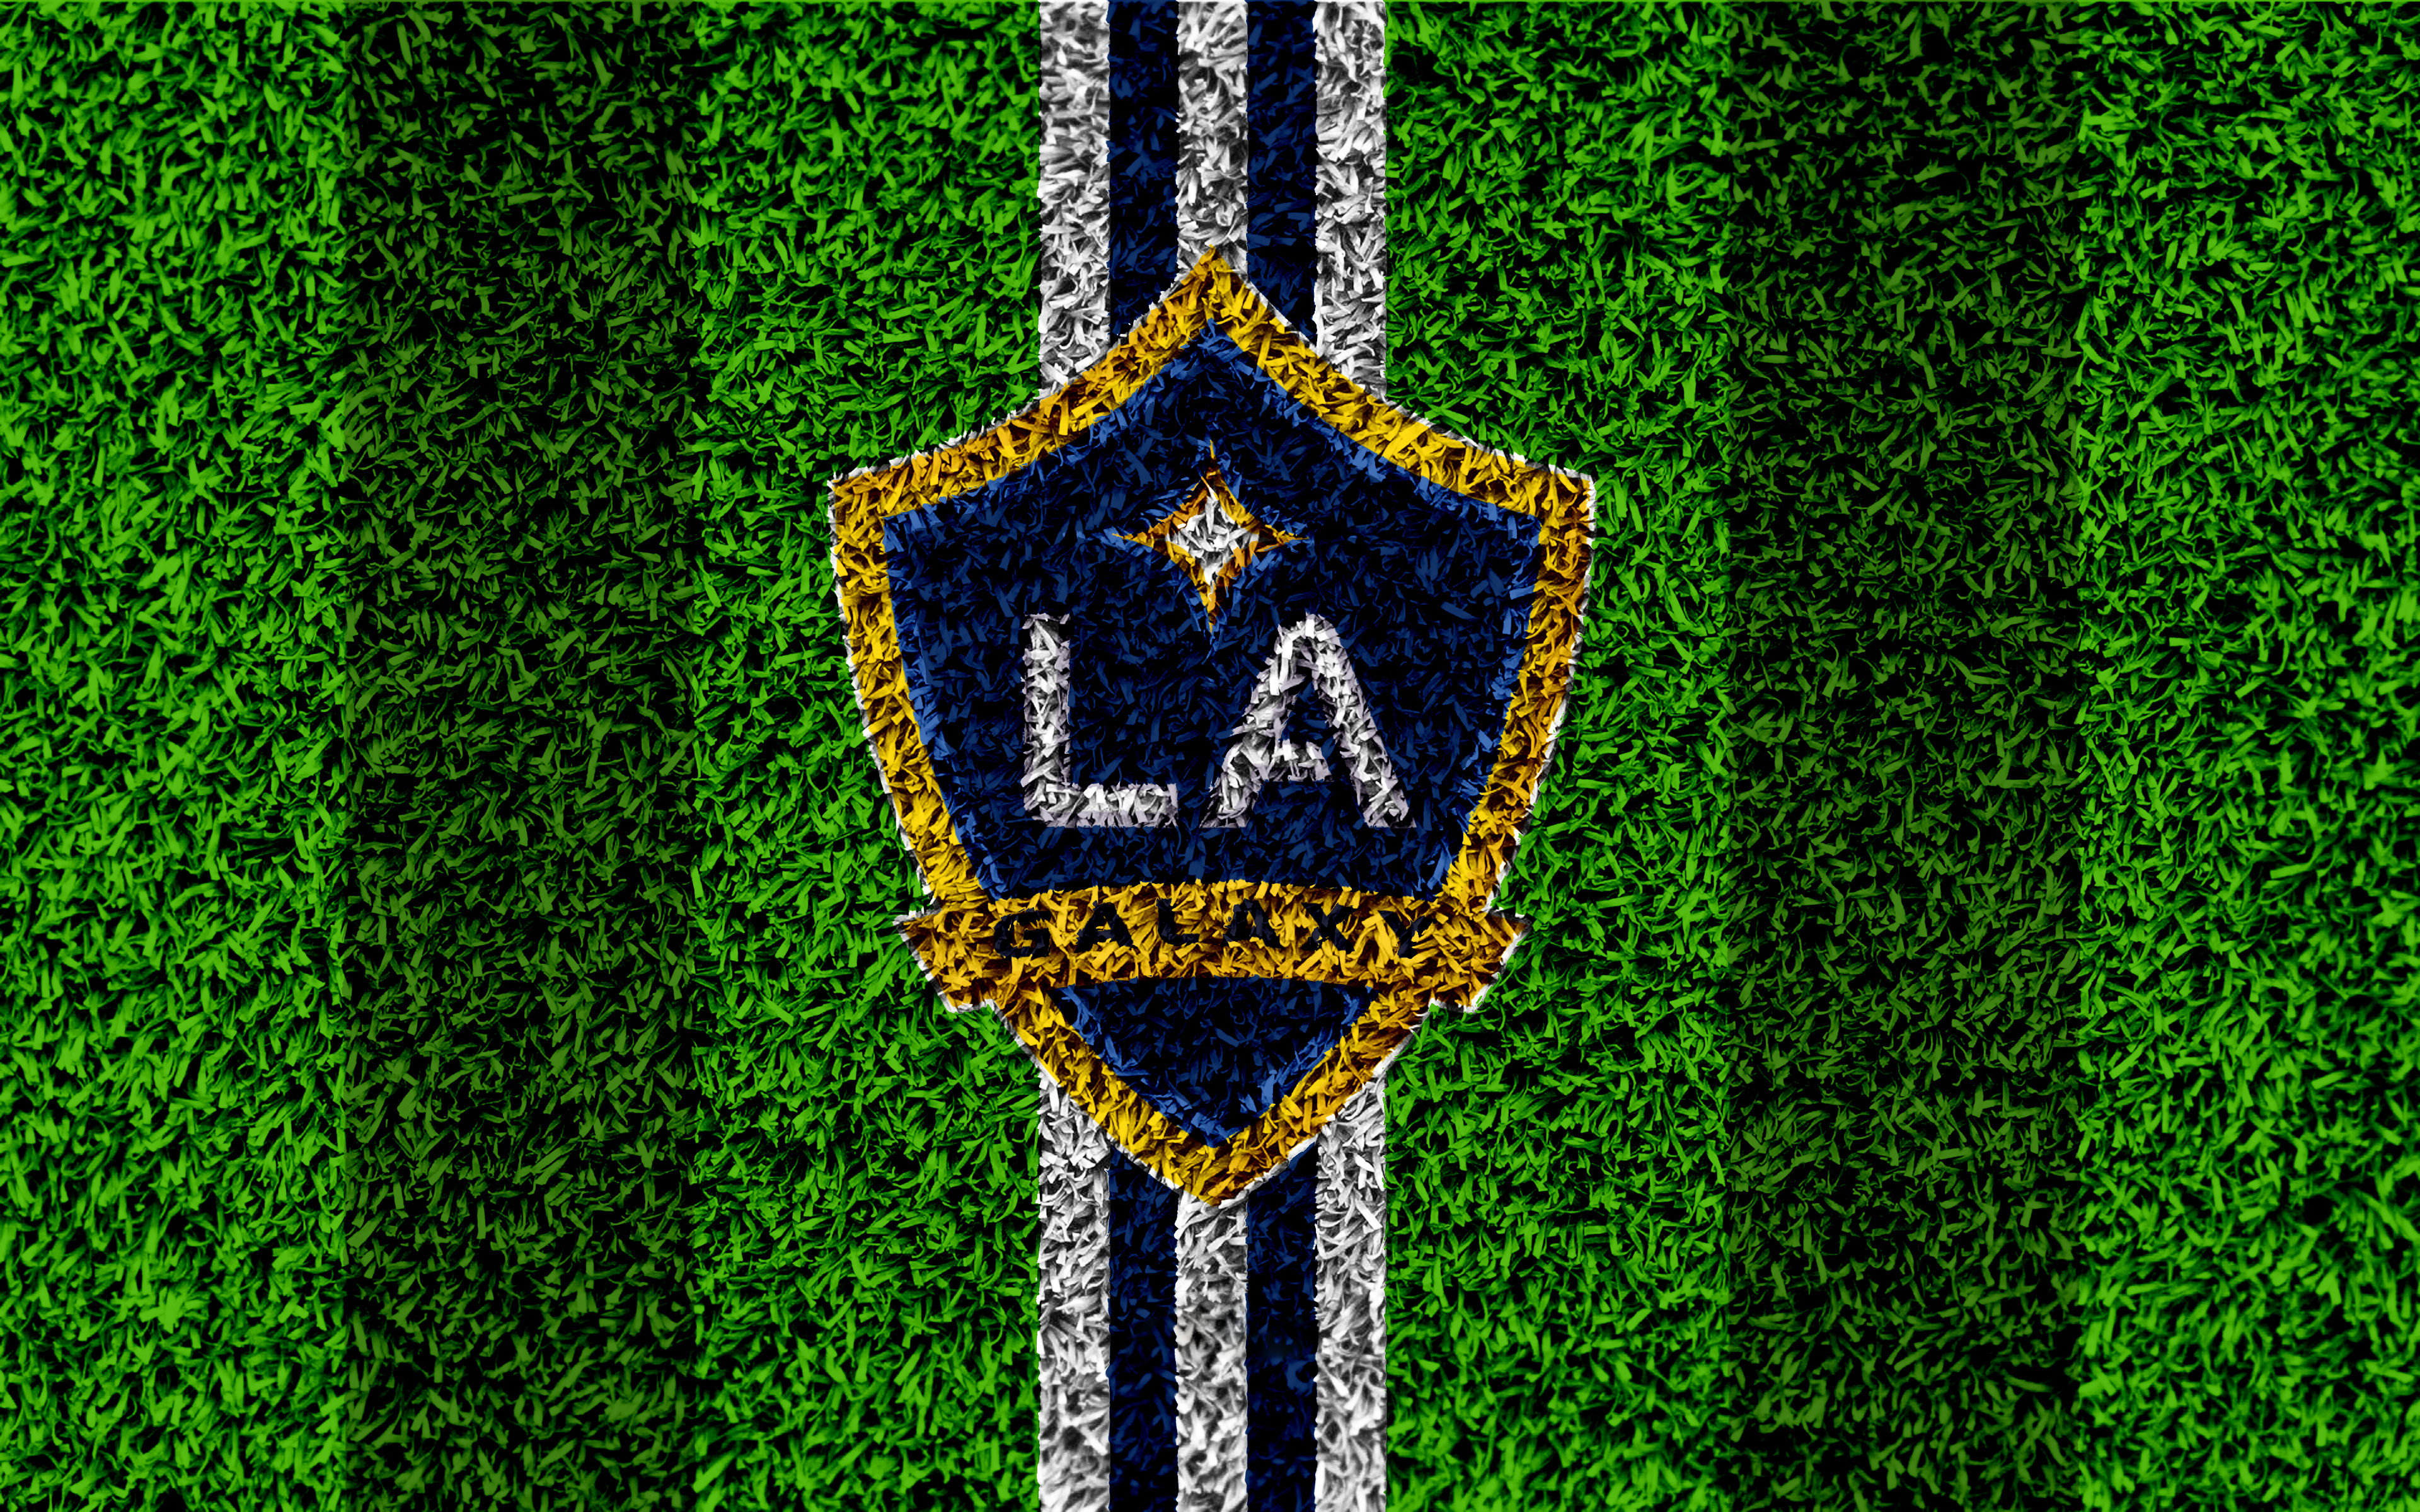 Emblem La Galaxy Logo Mls Soccer 3840x2400